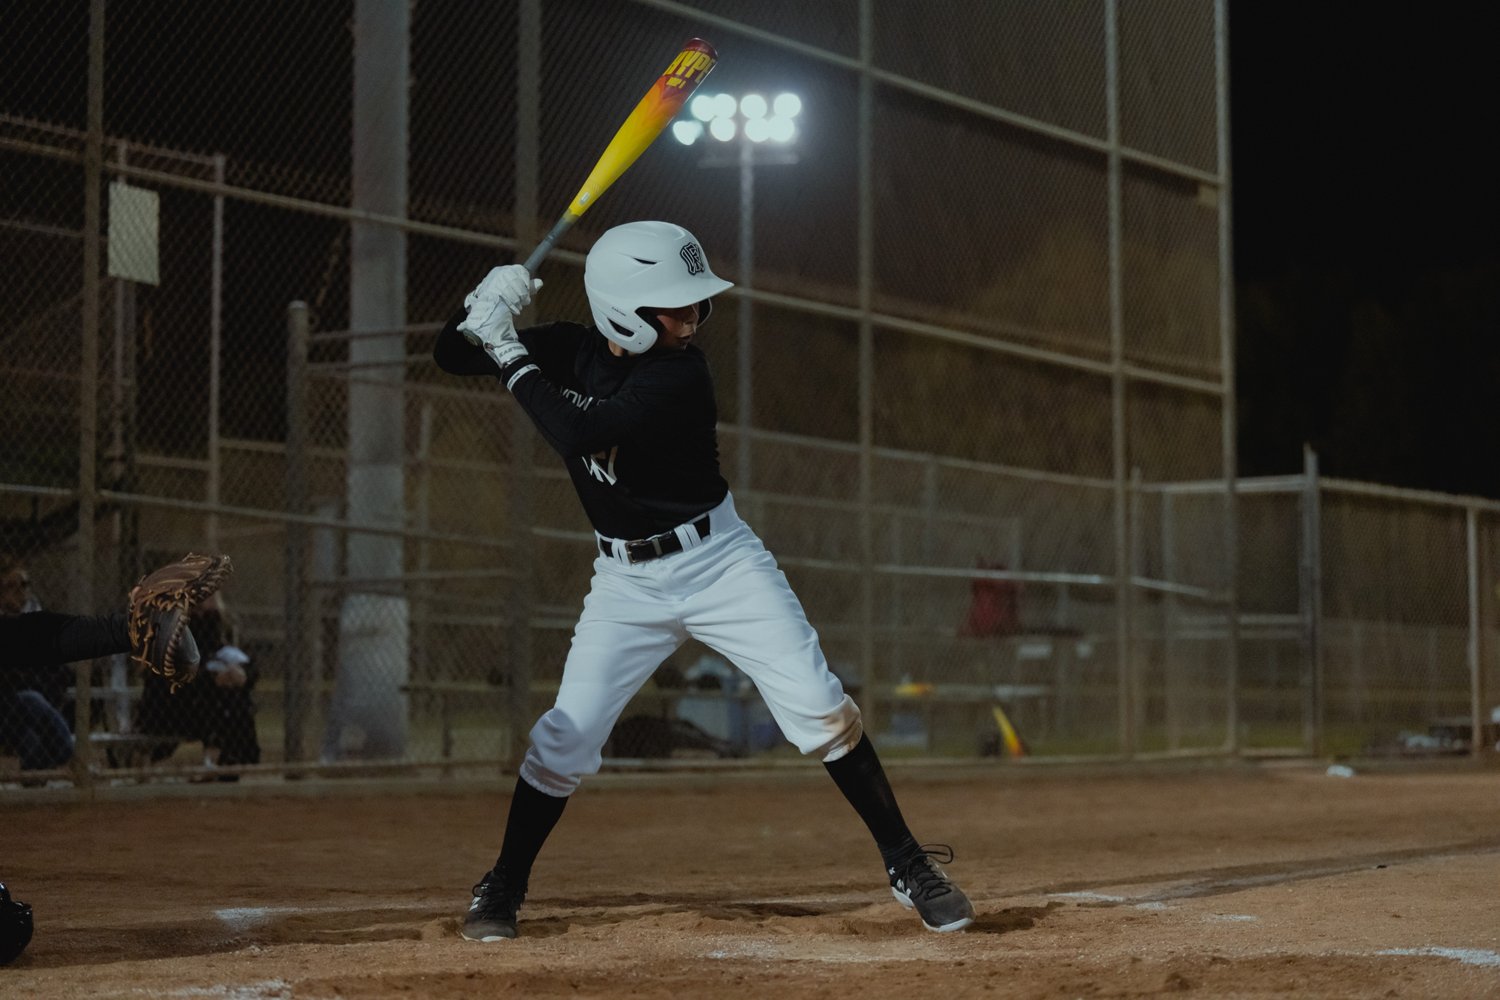 Easton 2024 Hype Fire USSSA Baseball Bat: EUT4HYP10, EUT4HYP8, EUT4HYP –  Prime Sports Midwest